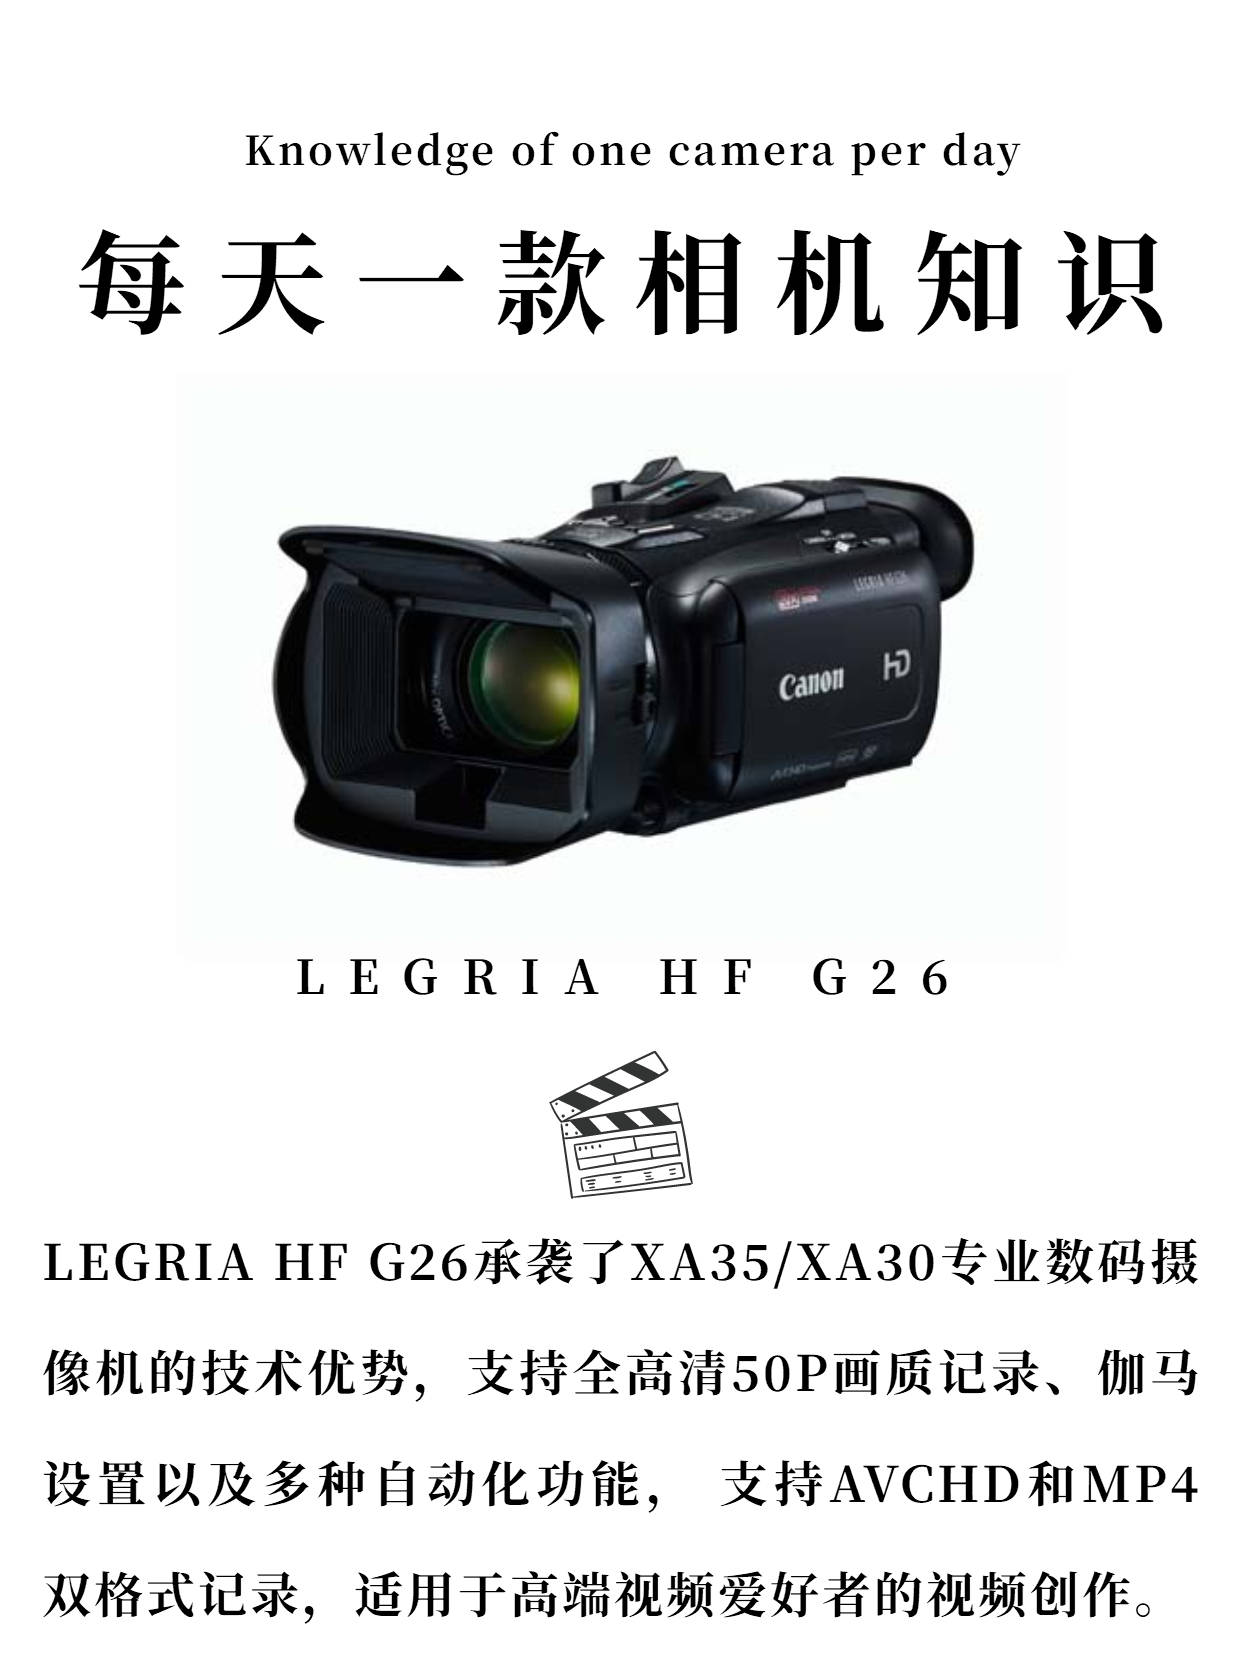 每天一款相机知识——LEGRIA HF G26